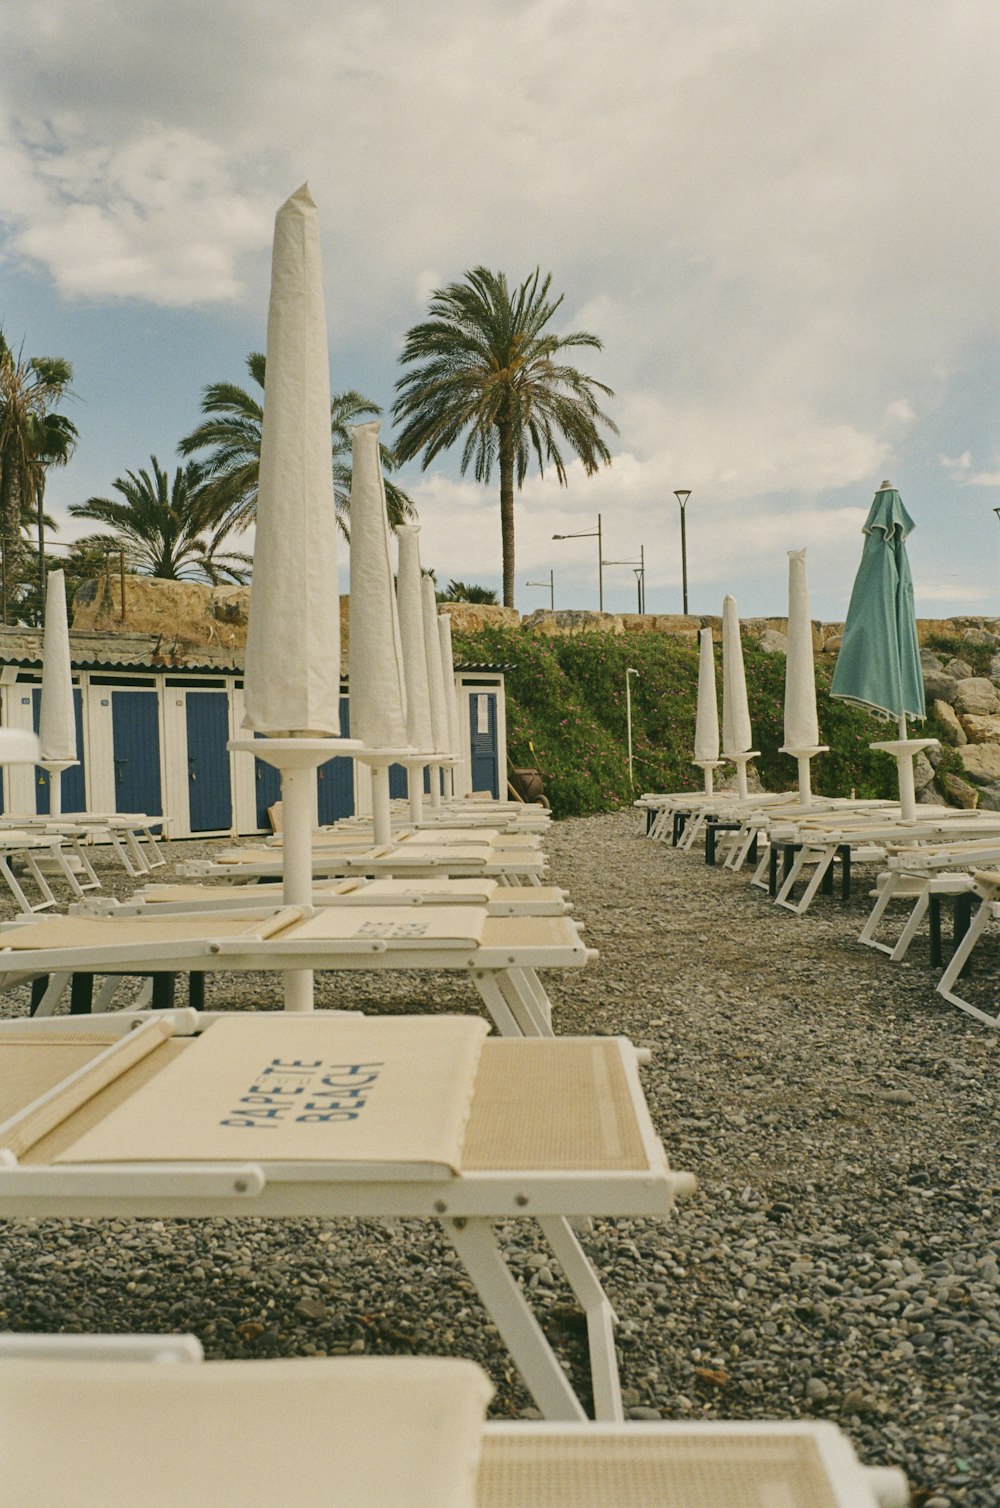 자갈로 덮인 해변 위에 앉아있는 해변 의자 행